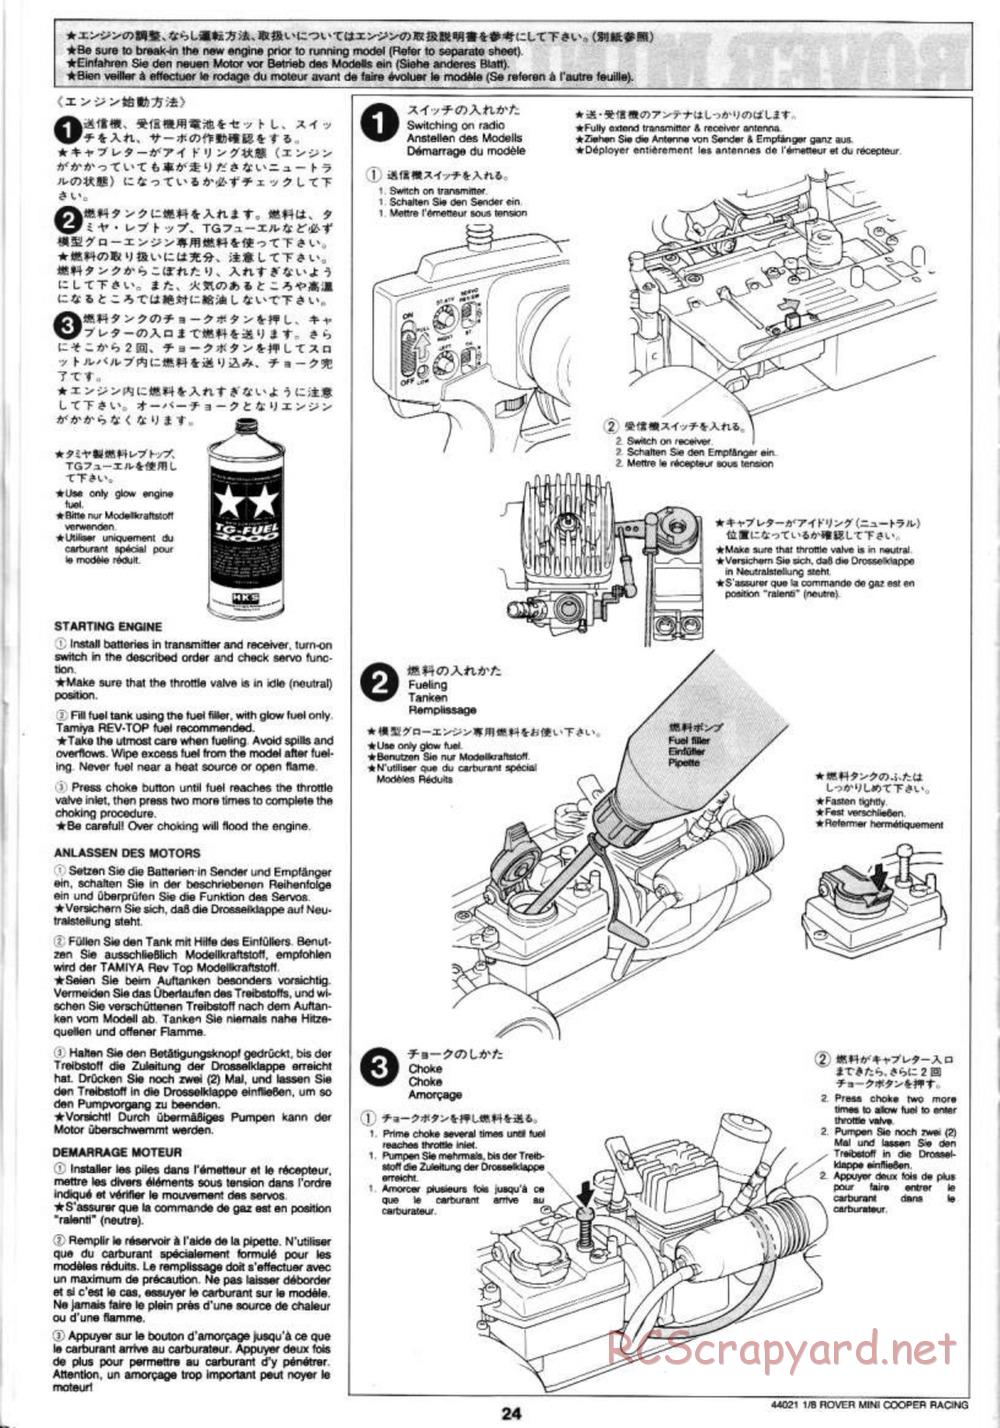 Tamiya - Rover Mini Cooper Racing - TG10 Mk.1 Chassis - Manual - Page 24